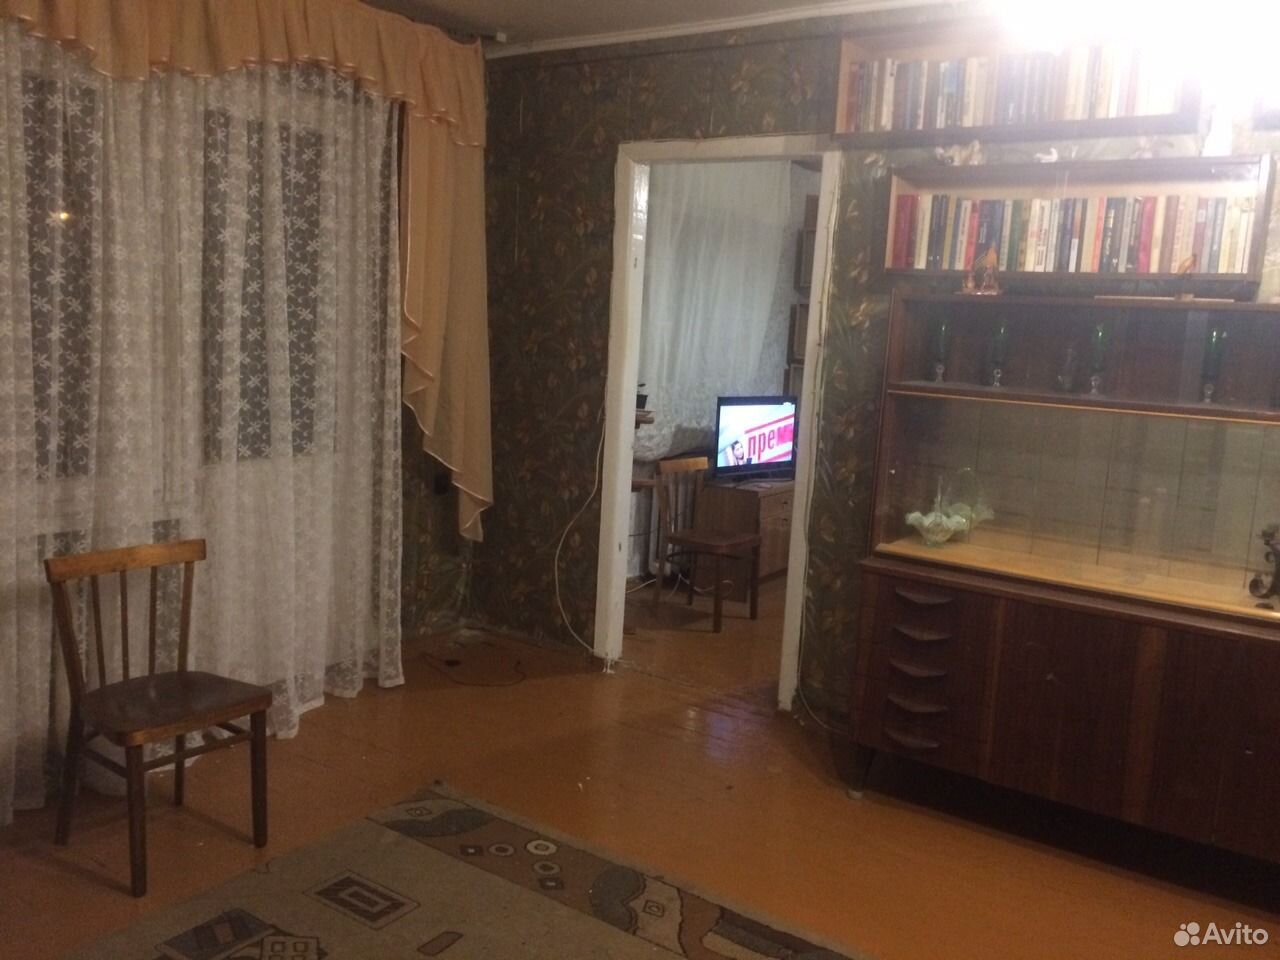 Левый берег комната воронеж. Дешевые 3-х комнатные квартиру в Воронеже купить левый берег.